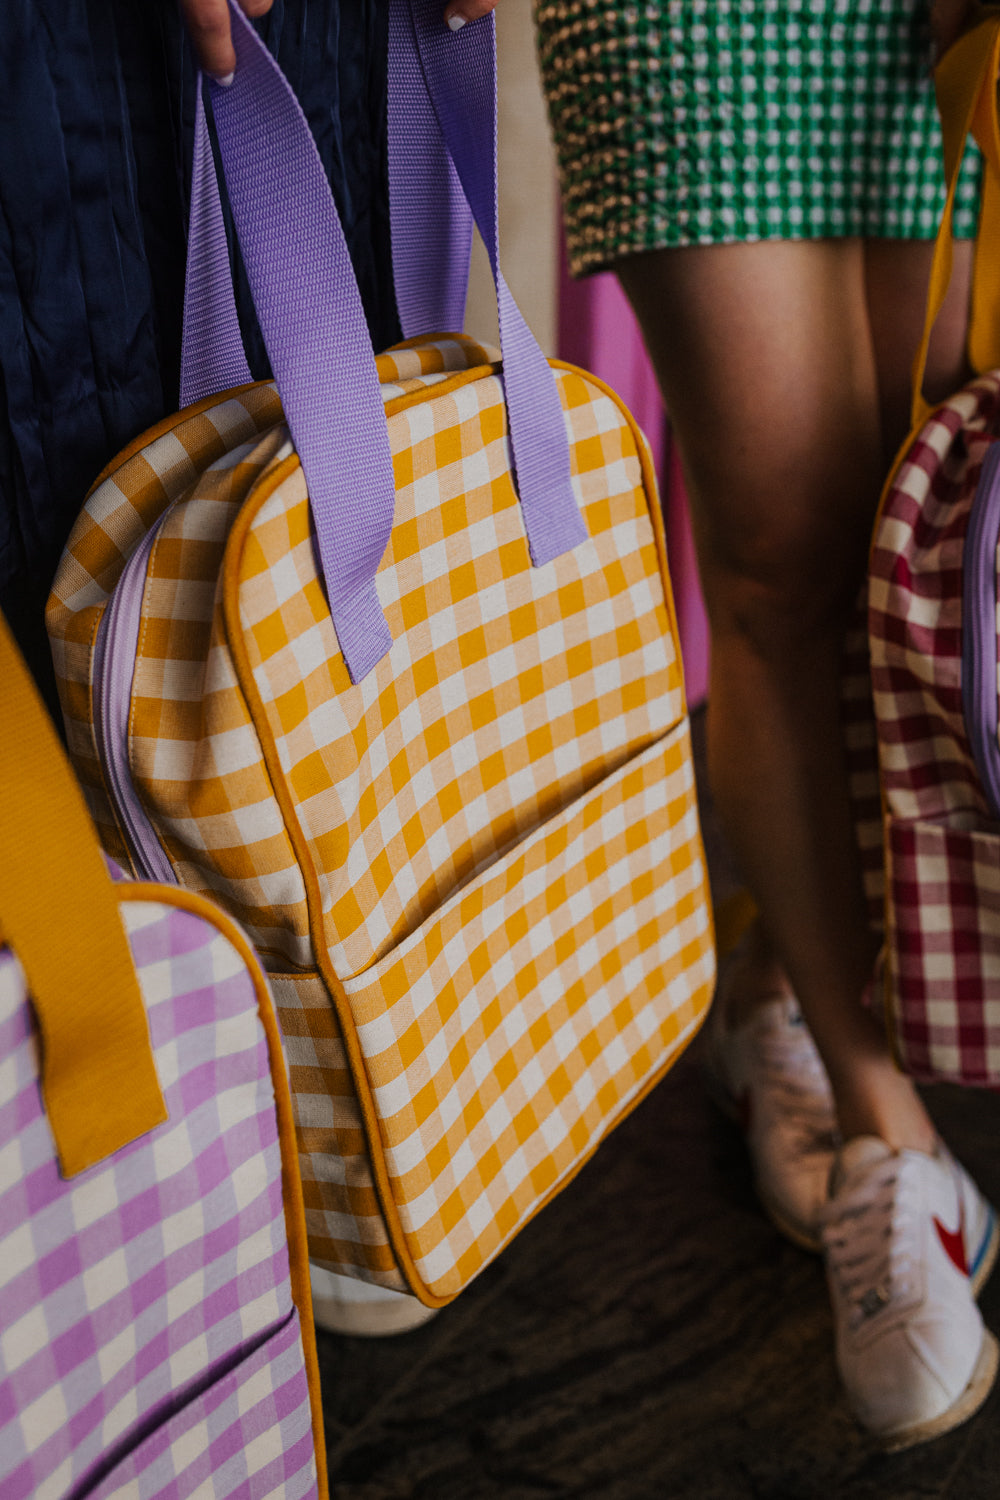 plecak w kratkę żółty od Bettys Home z fioletowymi paskami plecak do samolotu bagaż podręczny, dobry plecak miejski